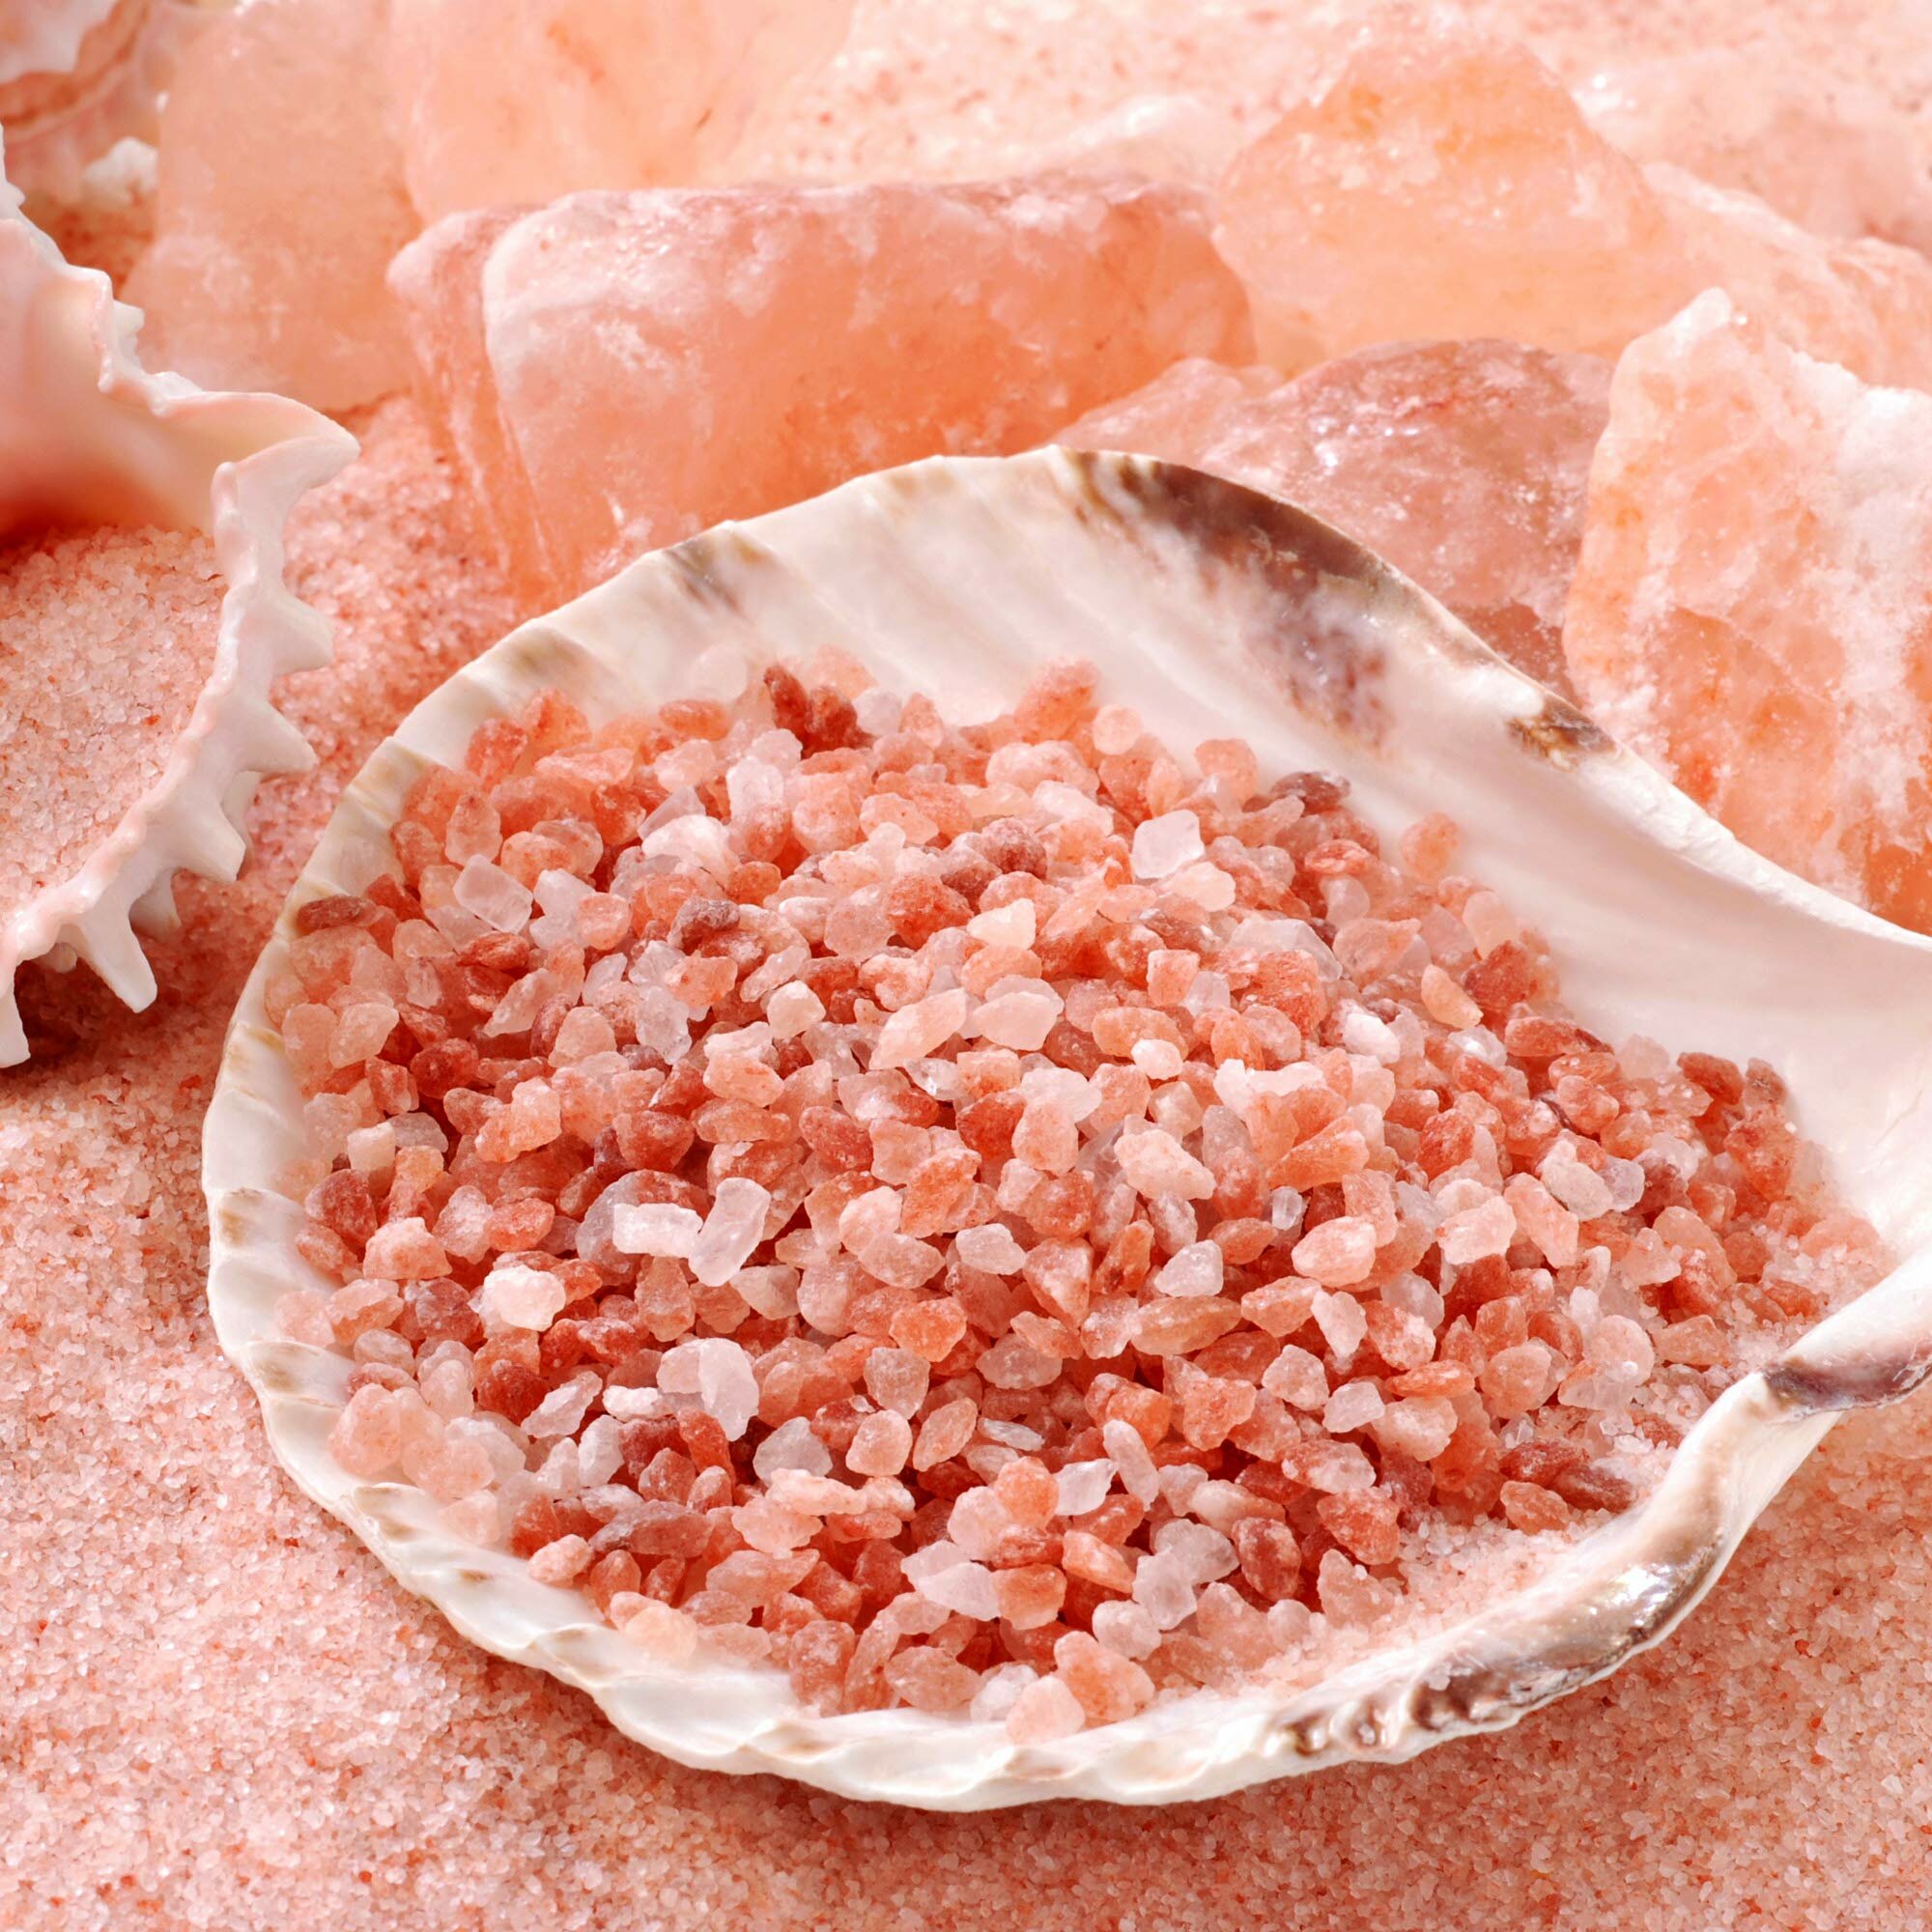 Соль гималайская розовая: польза и вред